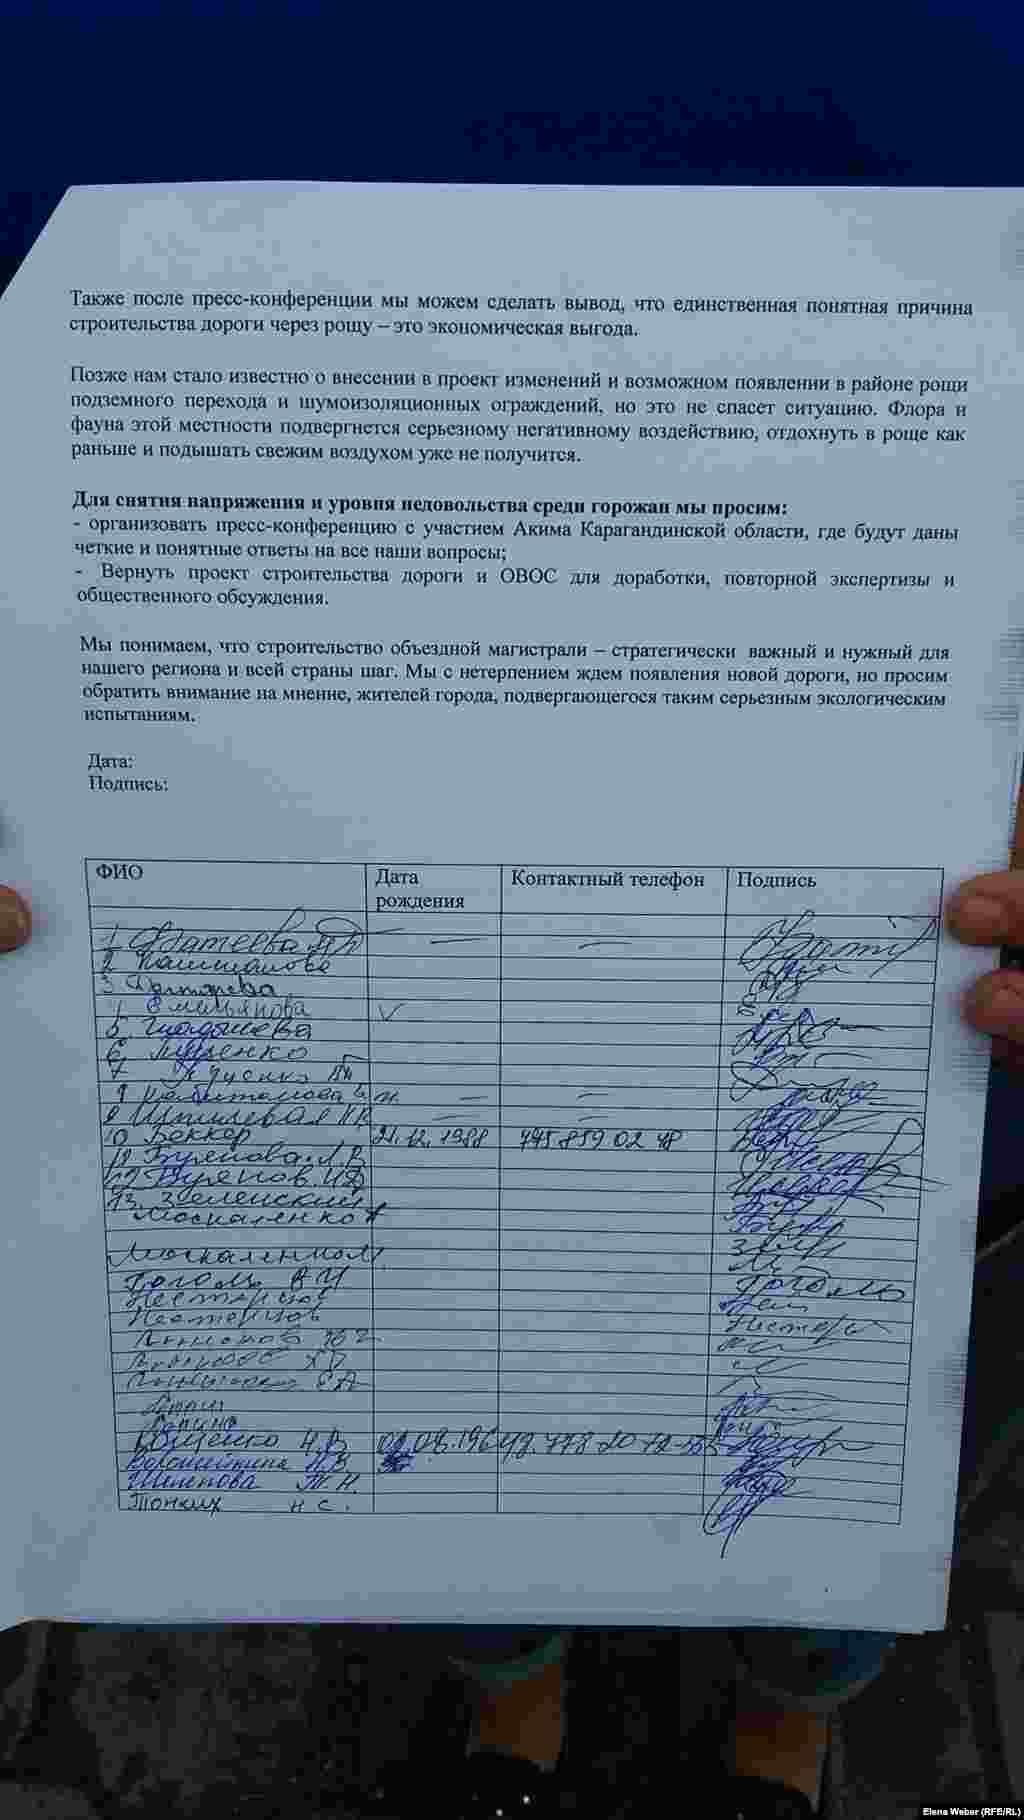 Фрагмент текста обращения к акиму Карагандинской области Ерлану Кошанову с подписями, сбор которых в поселке Новая Тихоновка продолжается.